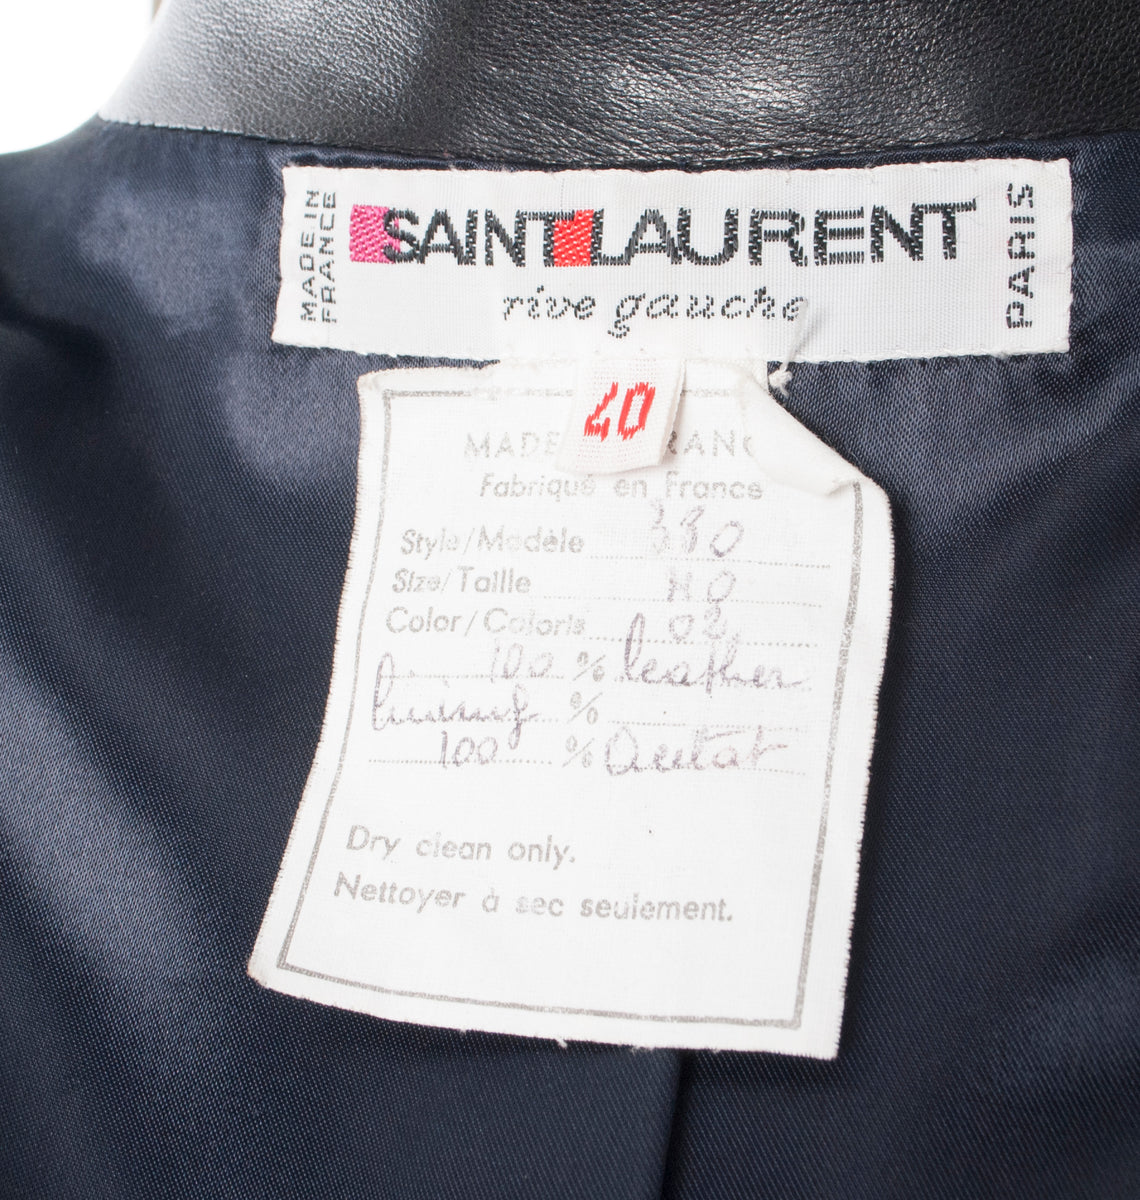 Yves Saint Laurent Rive Gauche dress - M - 1989 second hand vintage – Lysis